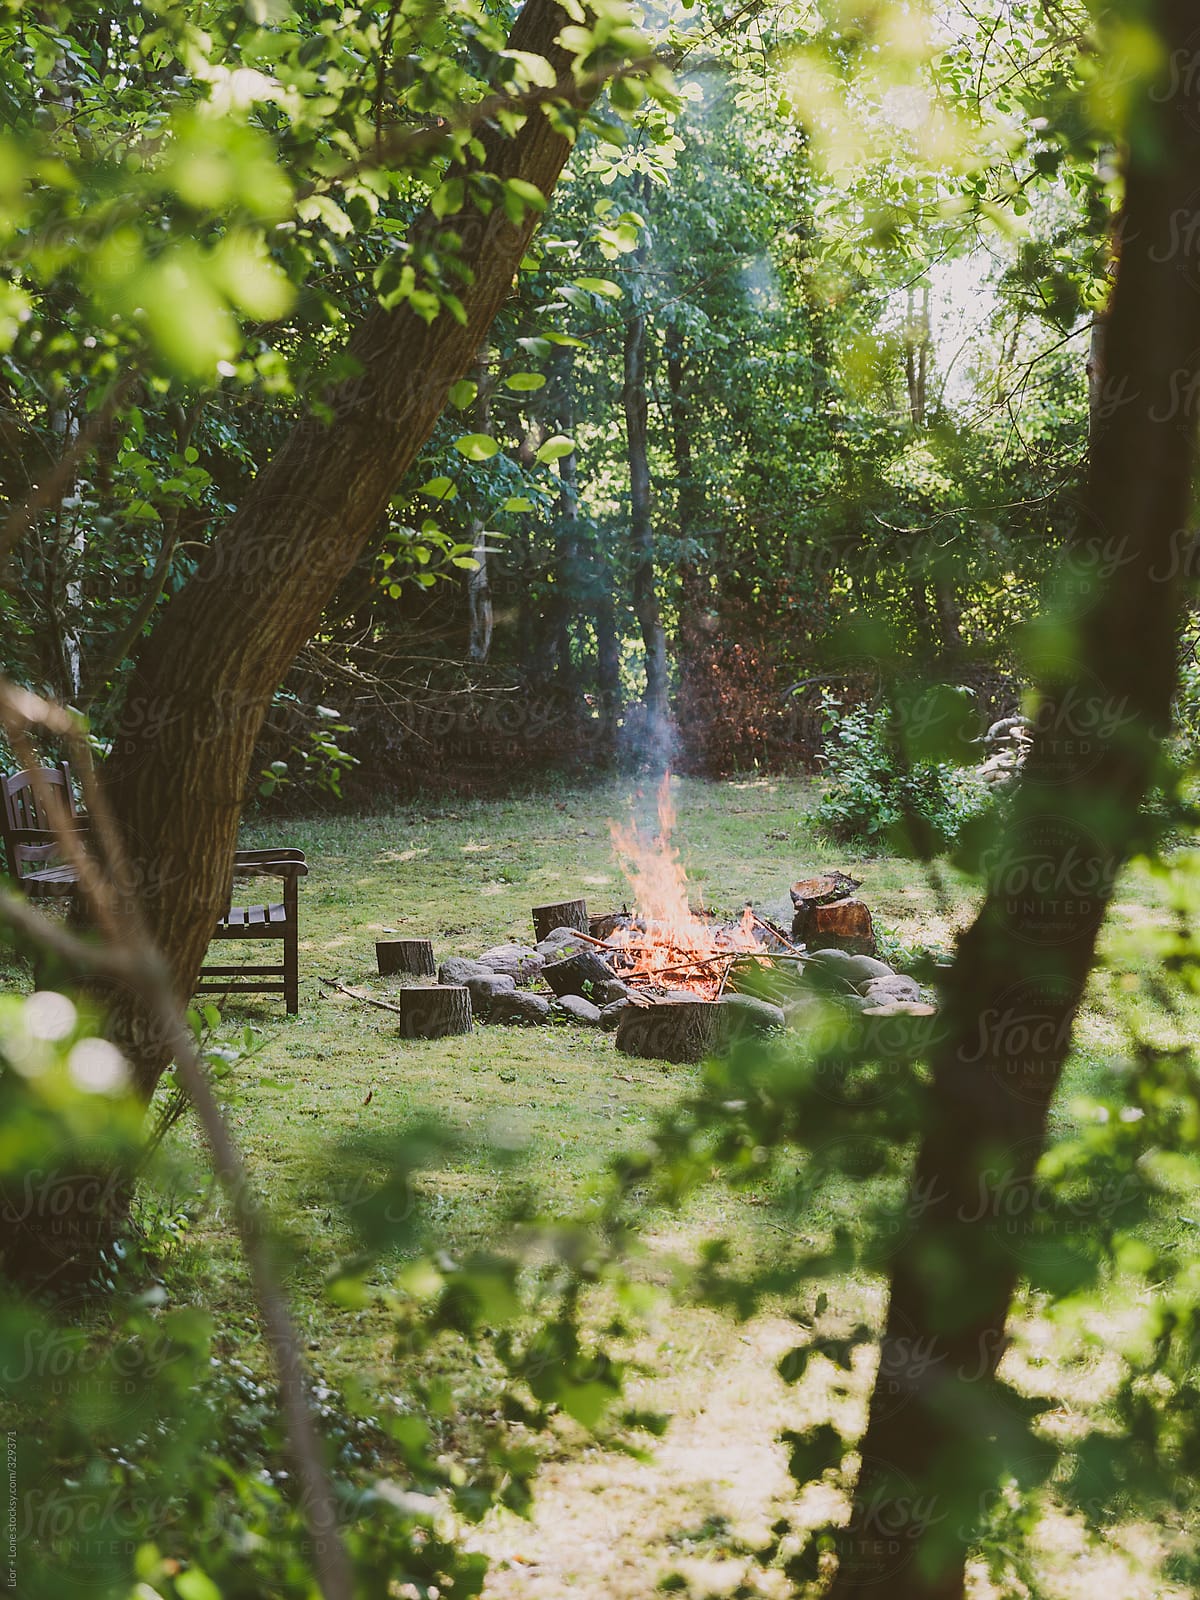 Wood fire in garden